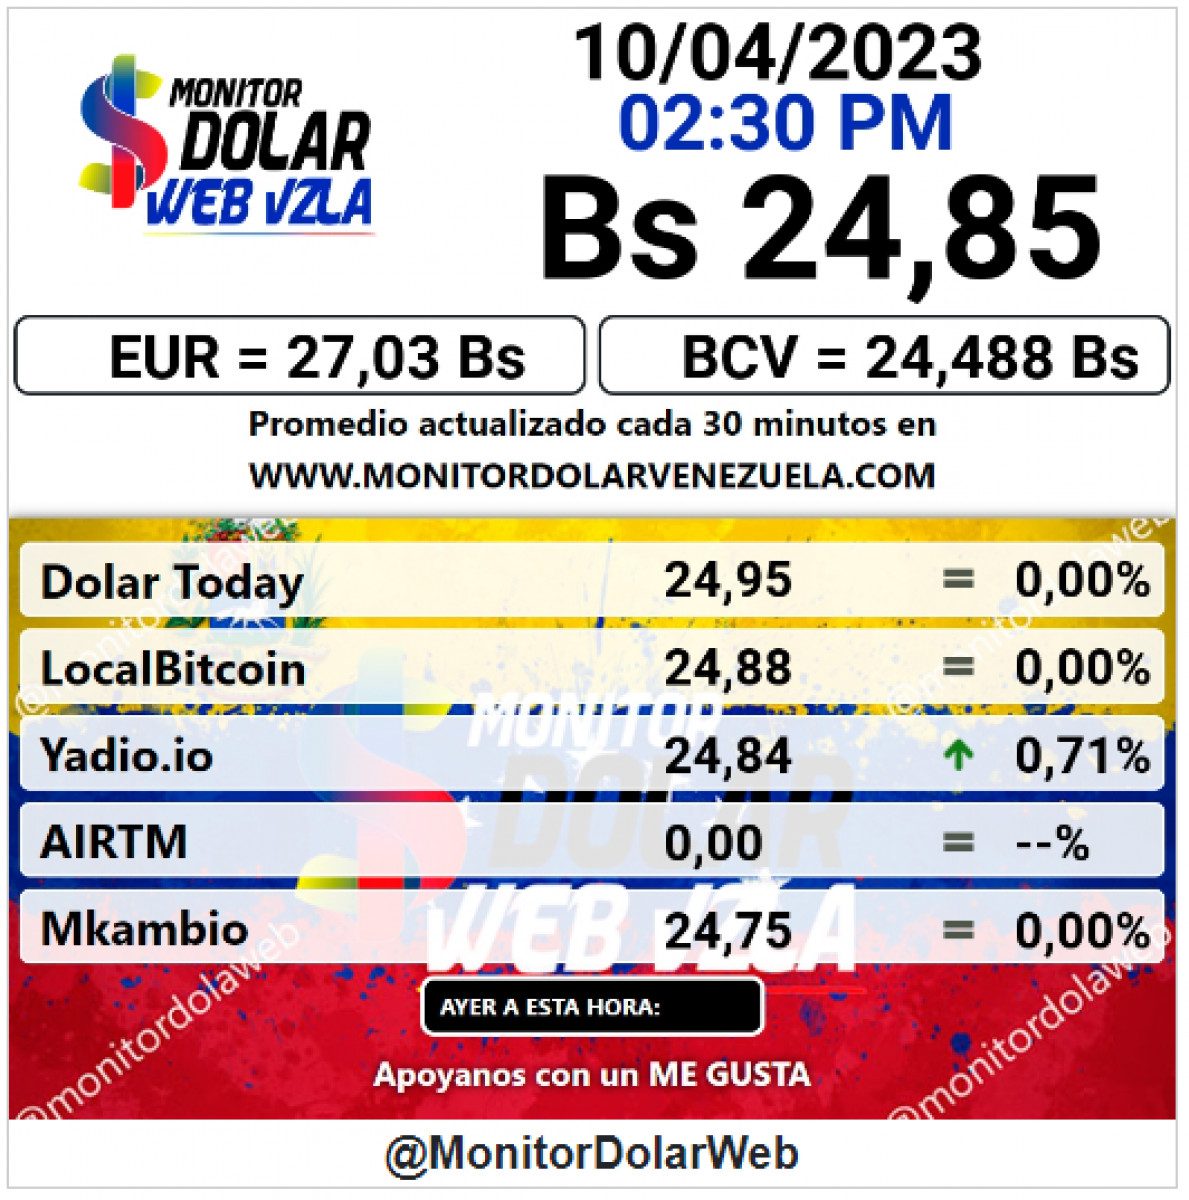 dolartoday en venezuela precio del dolar este lunes 10 de abril de 2023 laverdaddemonagas.com monitor2